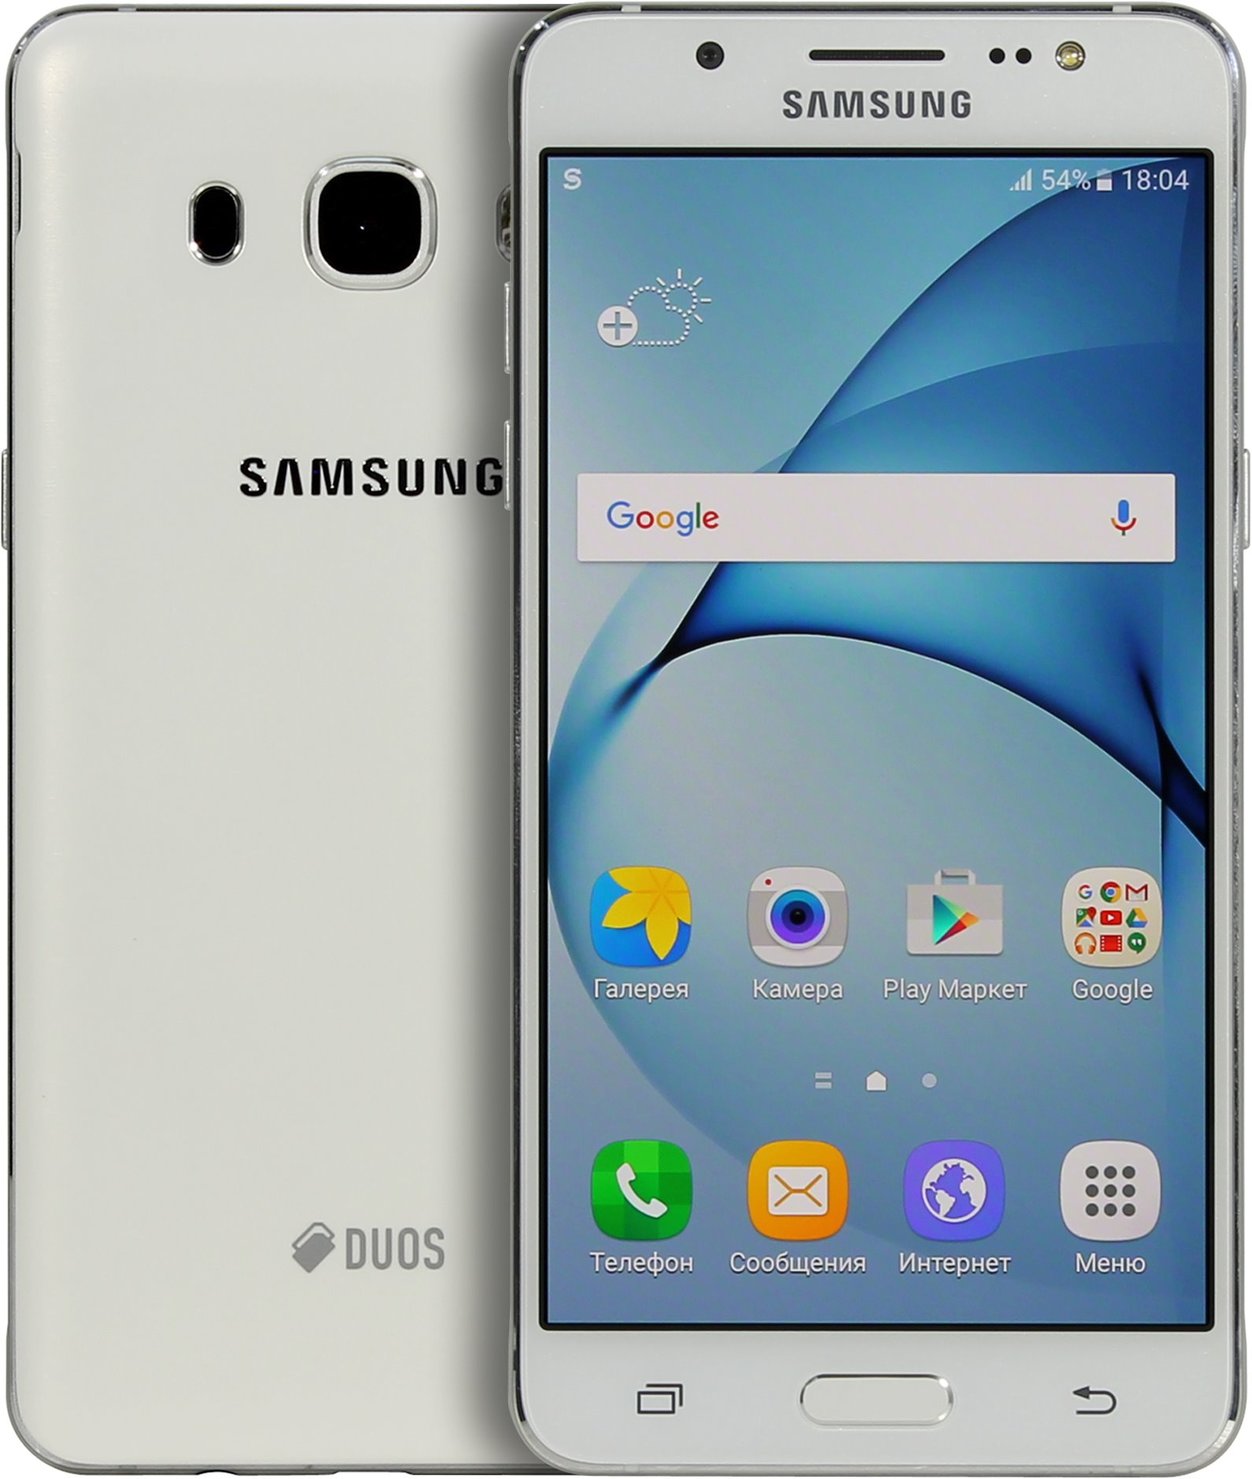 Джи 5 экран. Samsung SM-j510fn. Samsung Galaxy j5 2016 SM-j510fn. Самсунг j5 2016 белый. Samsung Galaxy j5 SM j510.